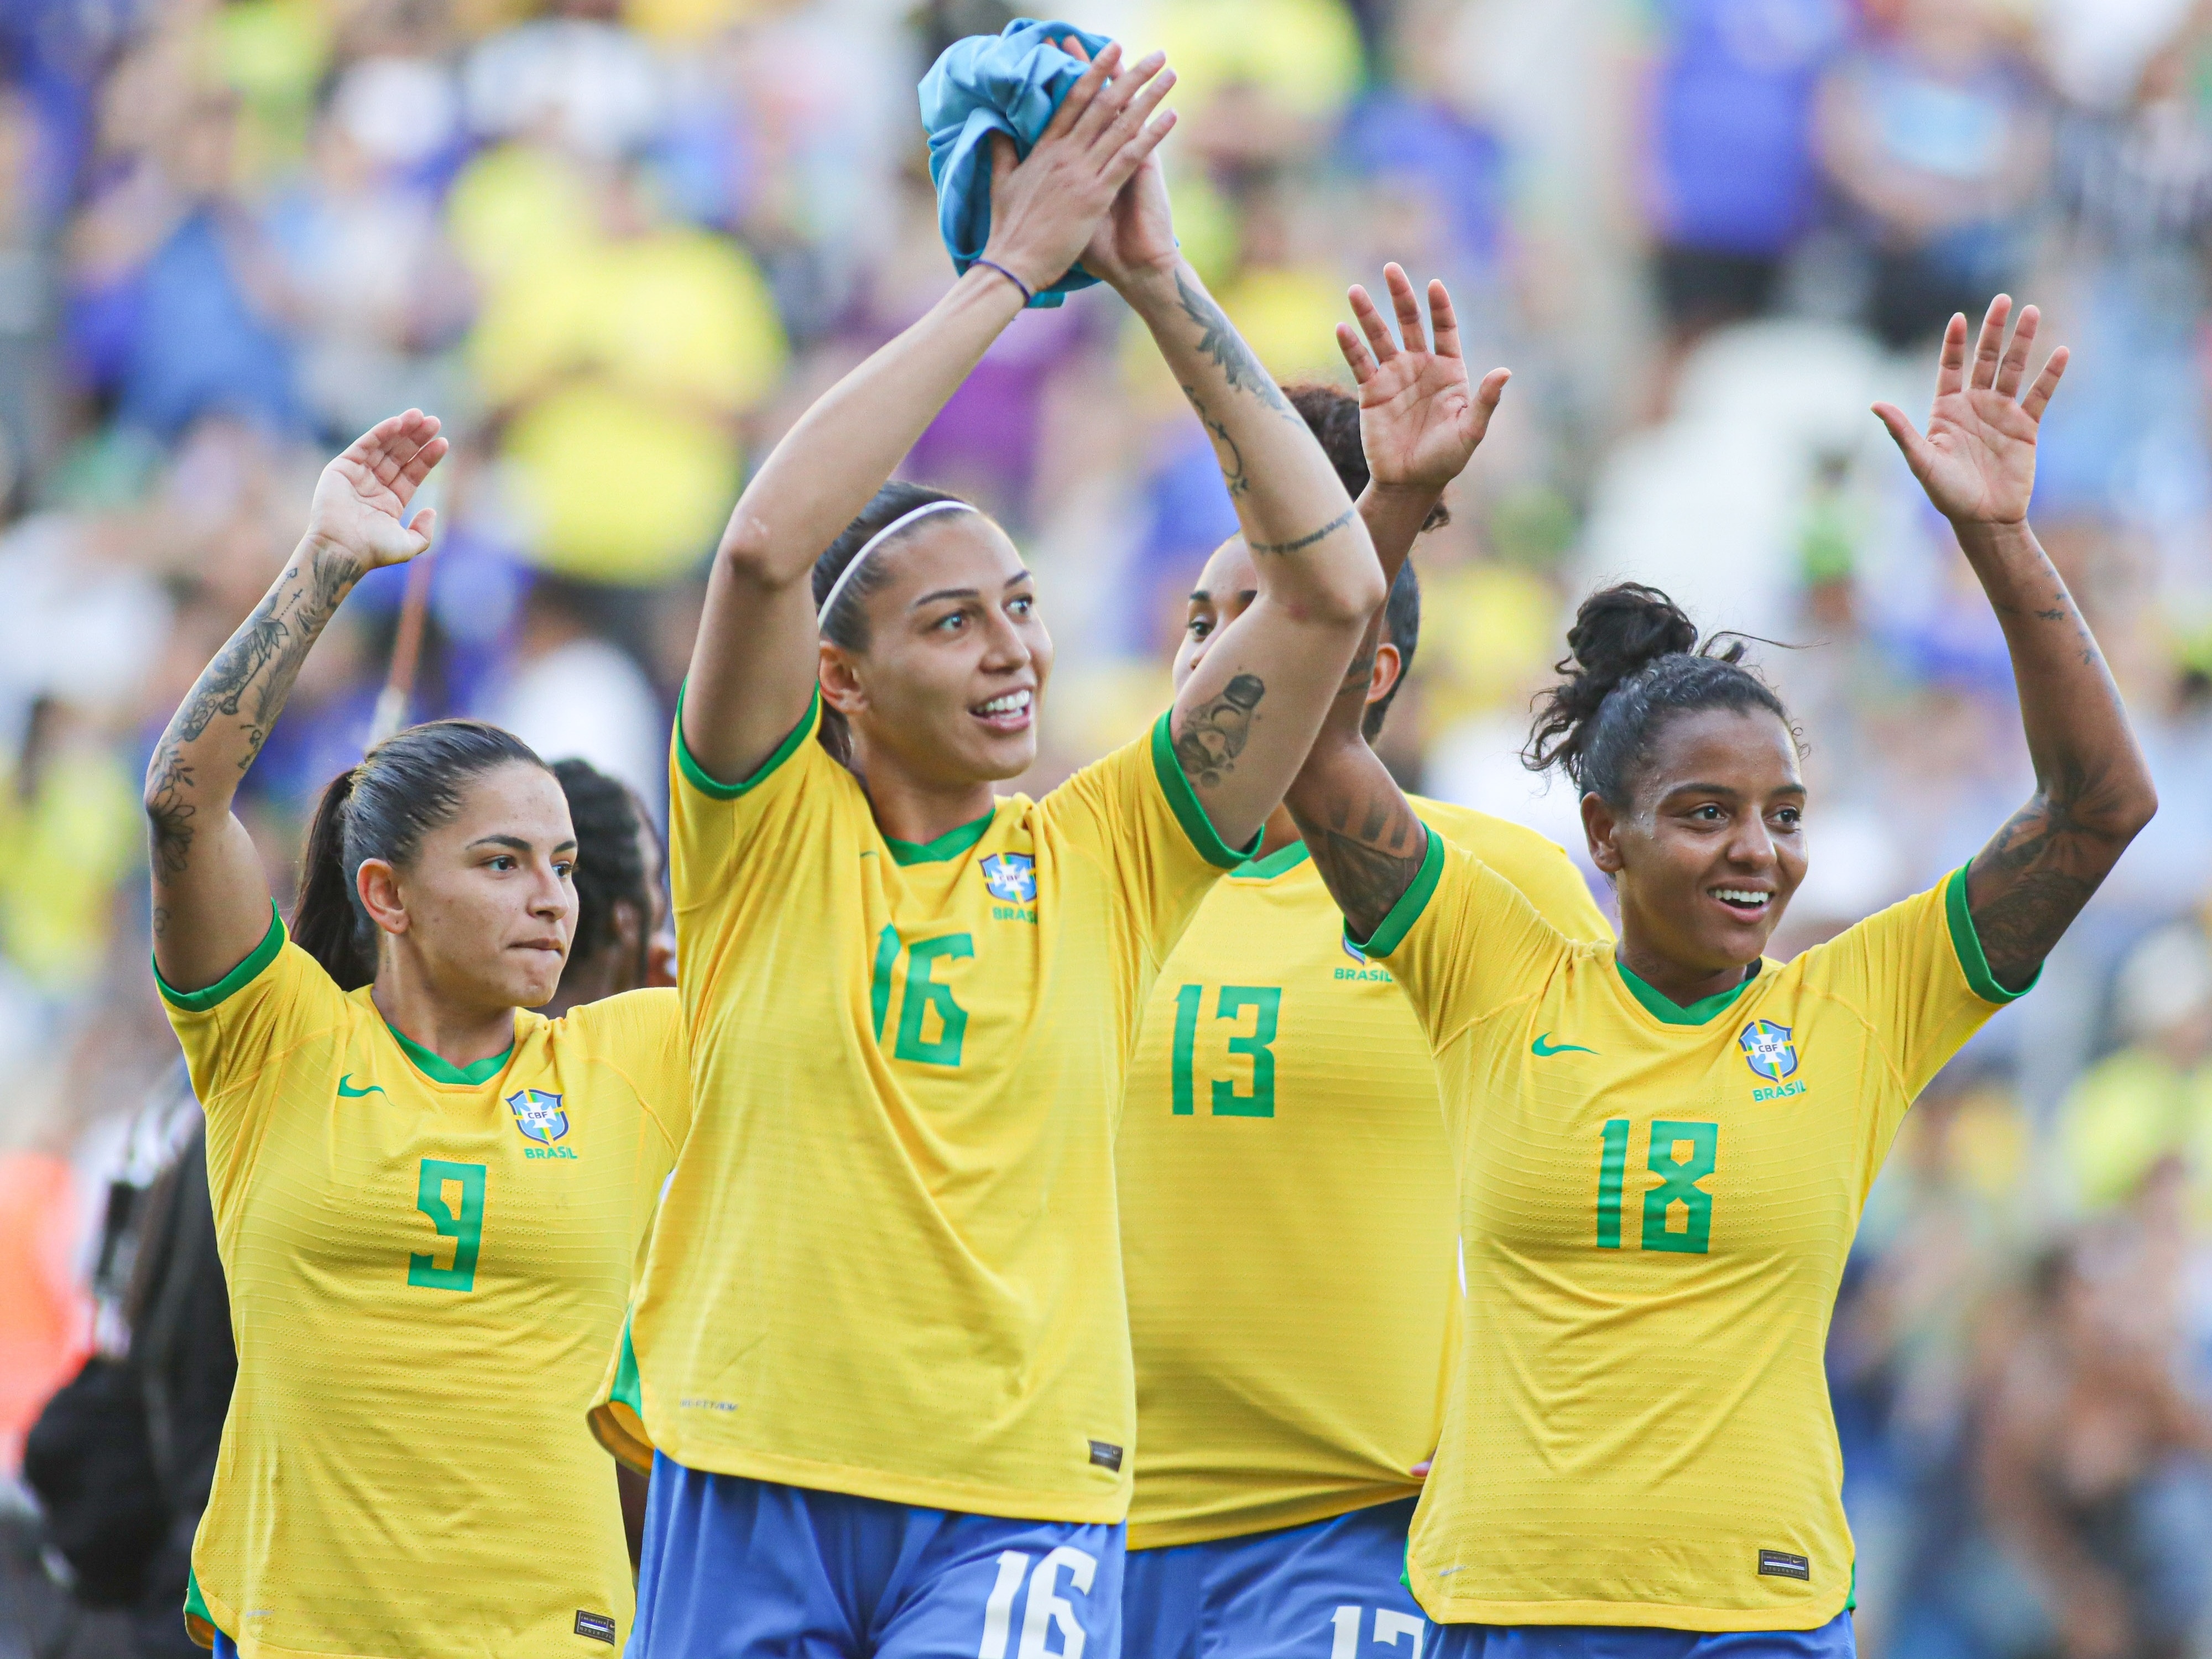 Copa feminina: Jogos do Brasil terão transmissão acessível na TV